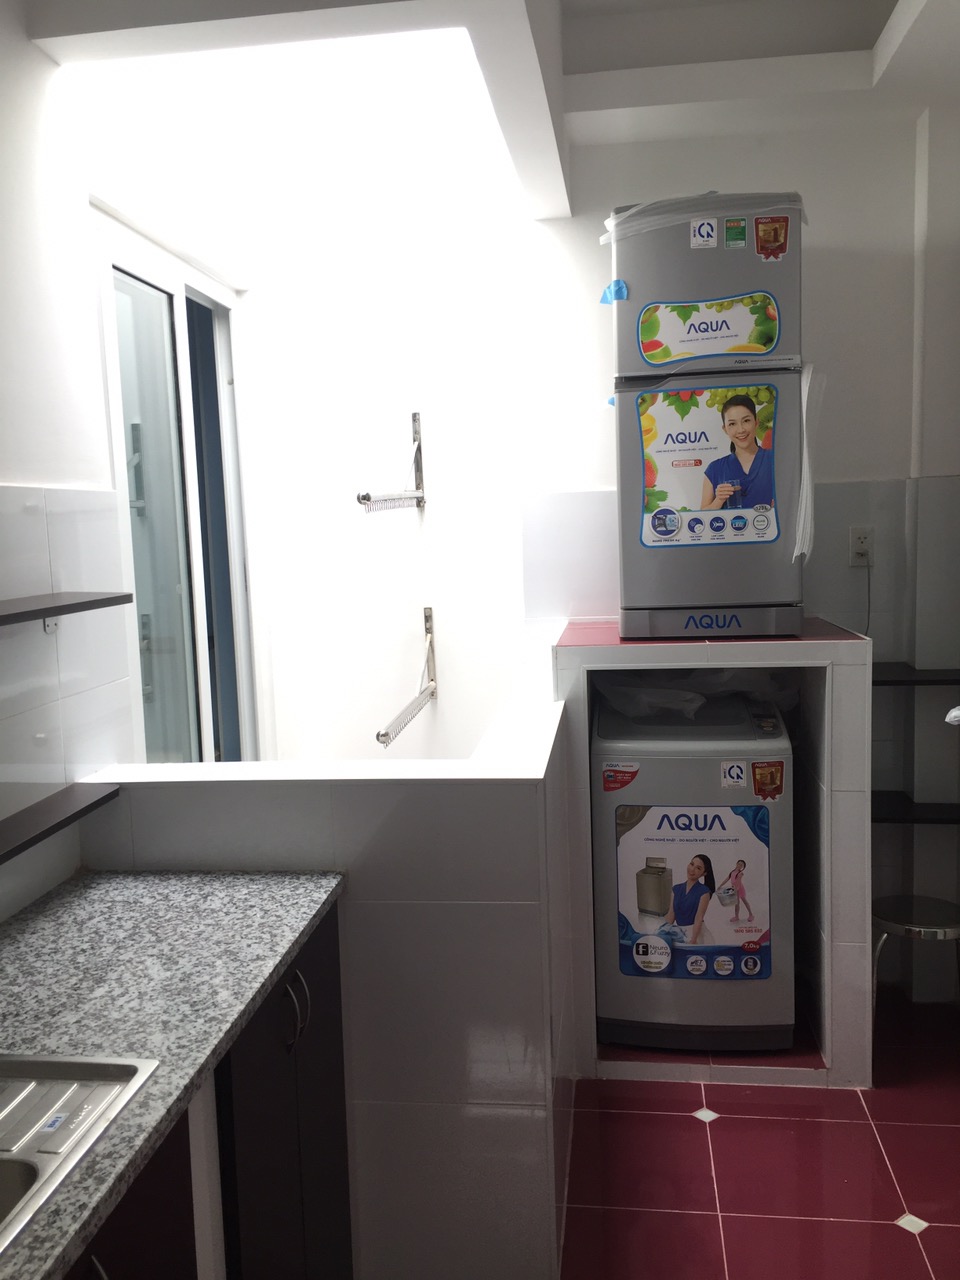 Căn hộ cao cấp ở quận Tân Bình, nội thất 5 sao, có phòng ngủ riêng bếp riêng, 0907989124